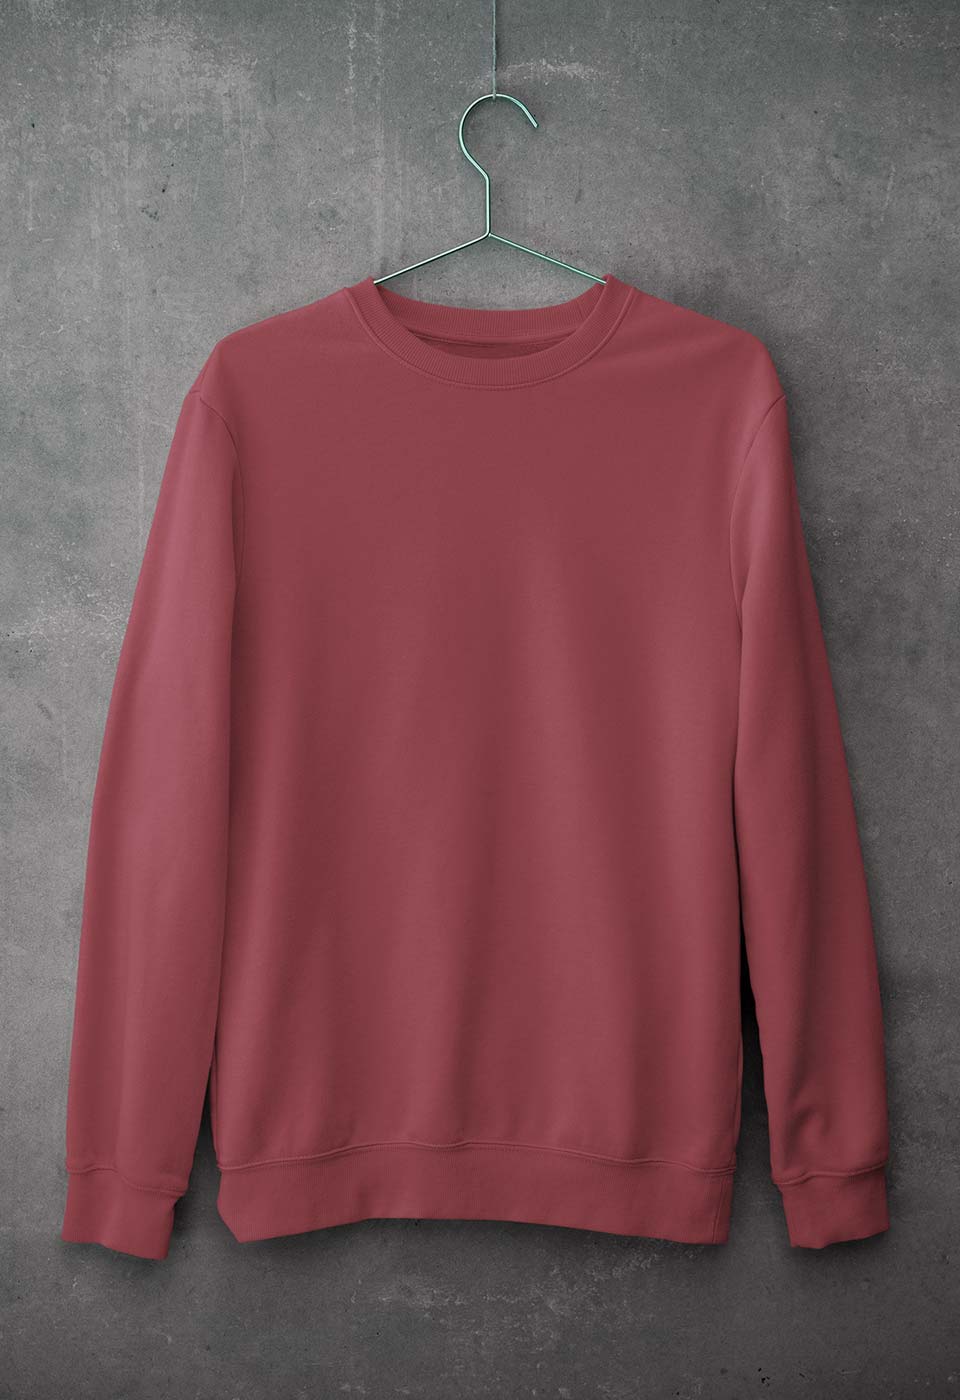 Plain Coral Unisex Sweatshirt for Men/Women